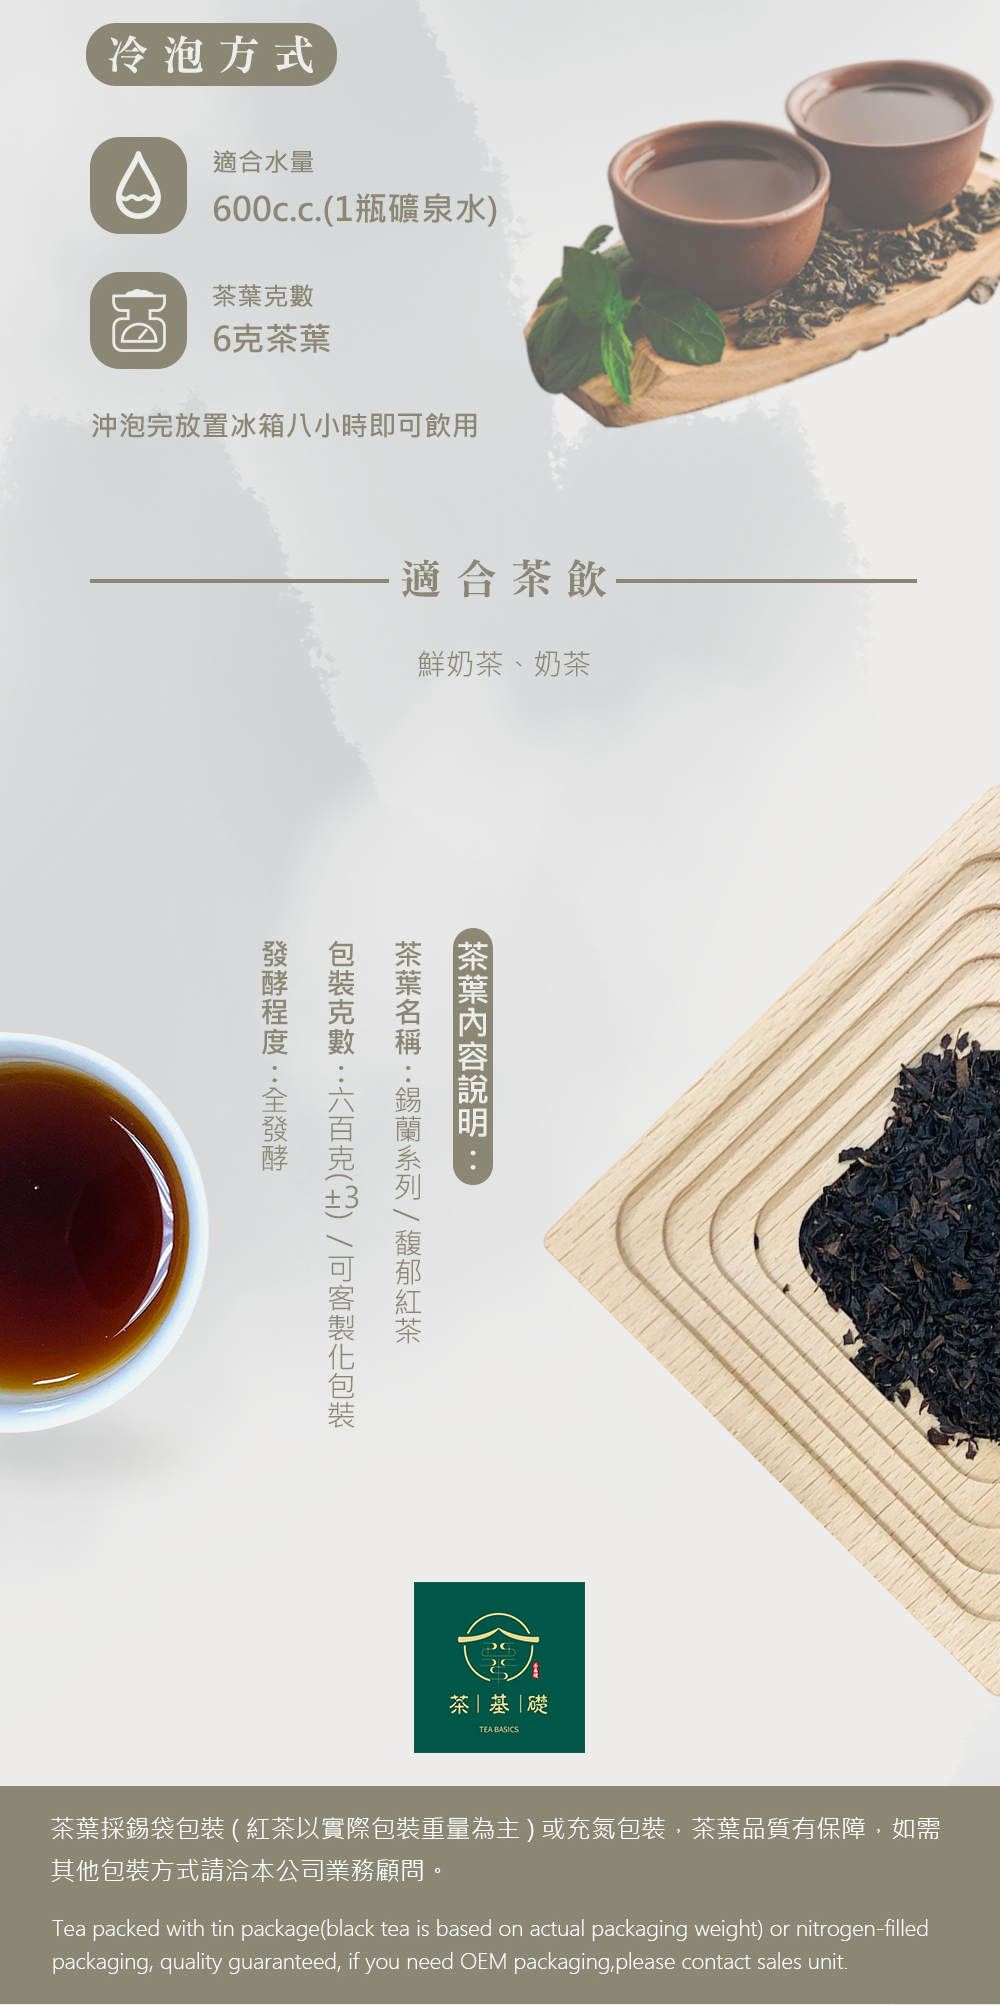 馥郁紅茶 | 泡沫紅茶 | 商用茶 | 錫蘭紅茶